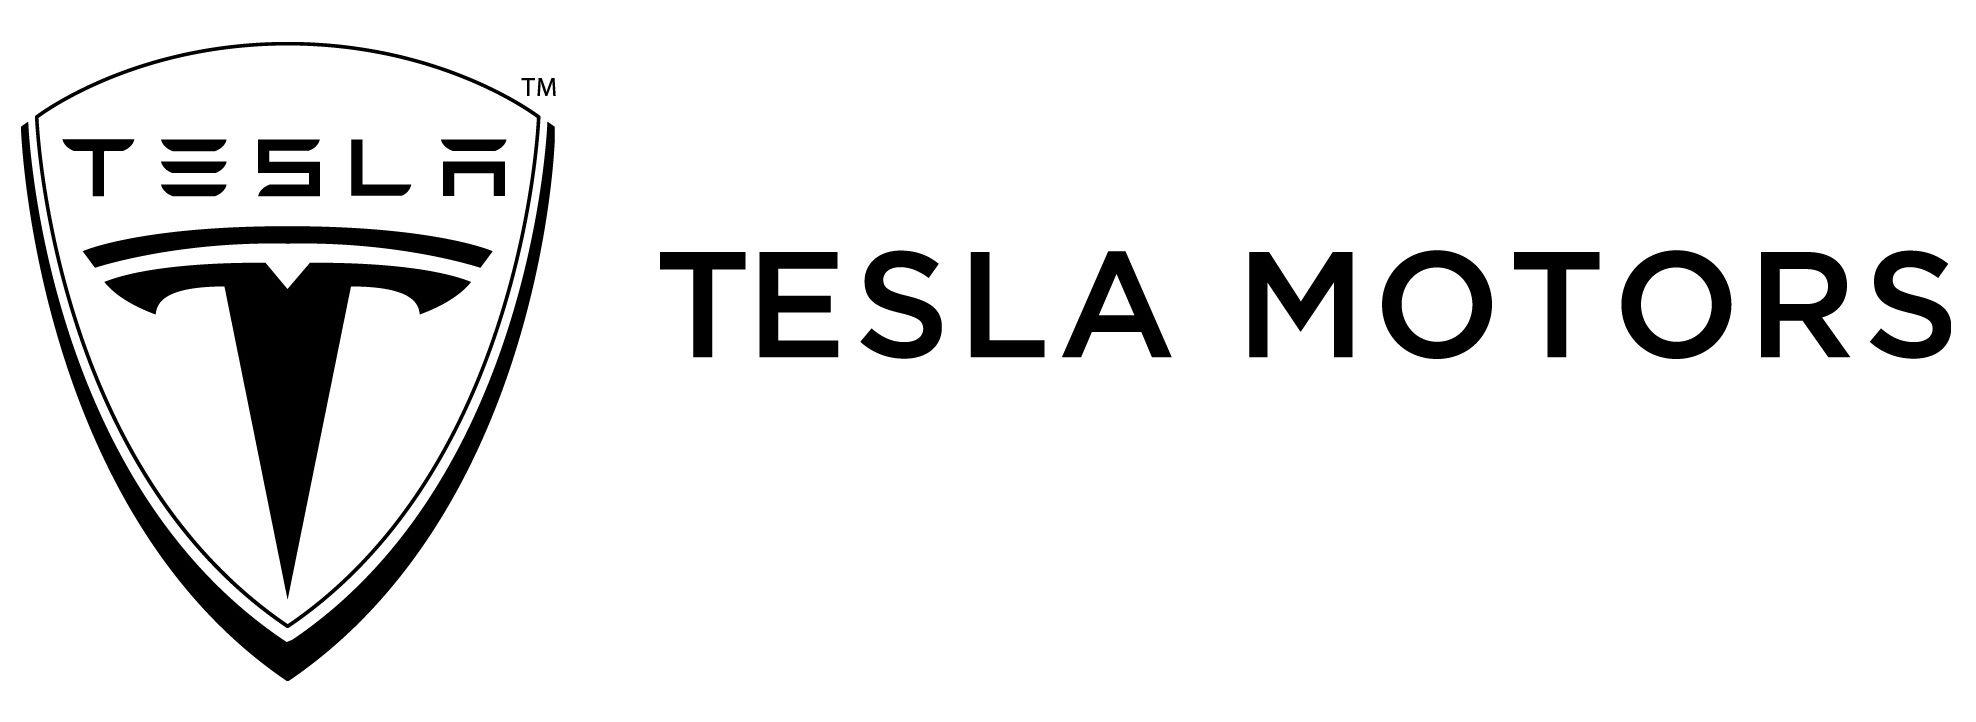 Tesla Vehicle Logo - Tesla Motors | Cartype